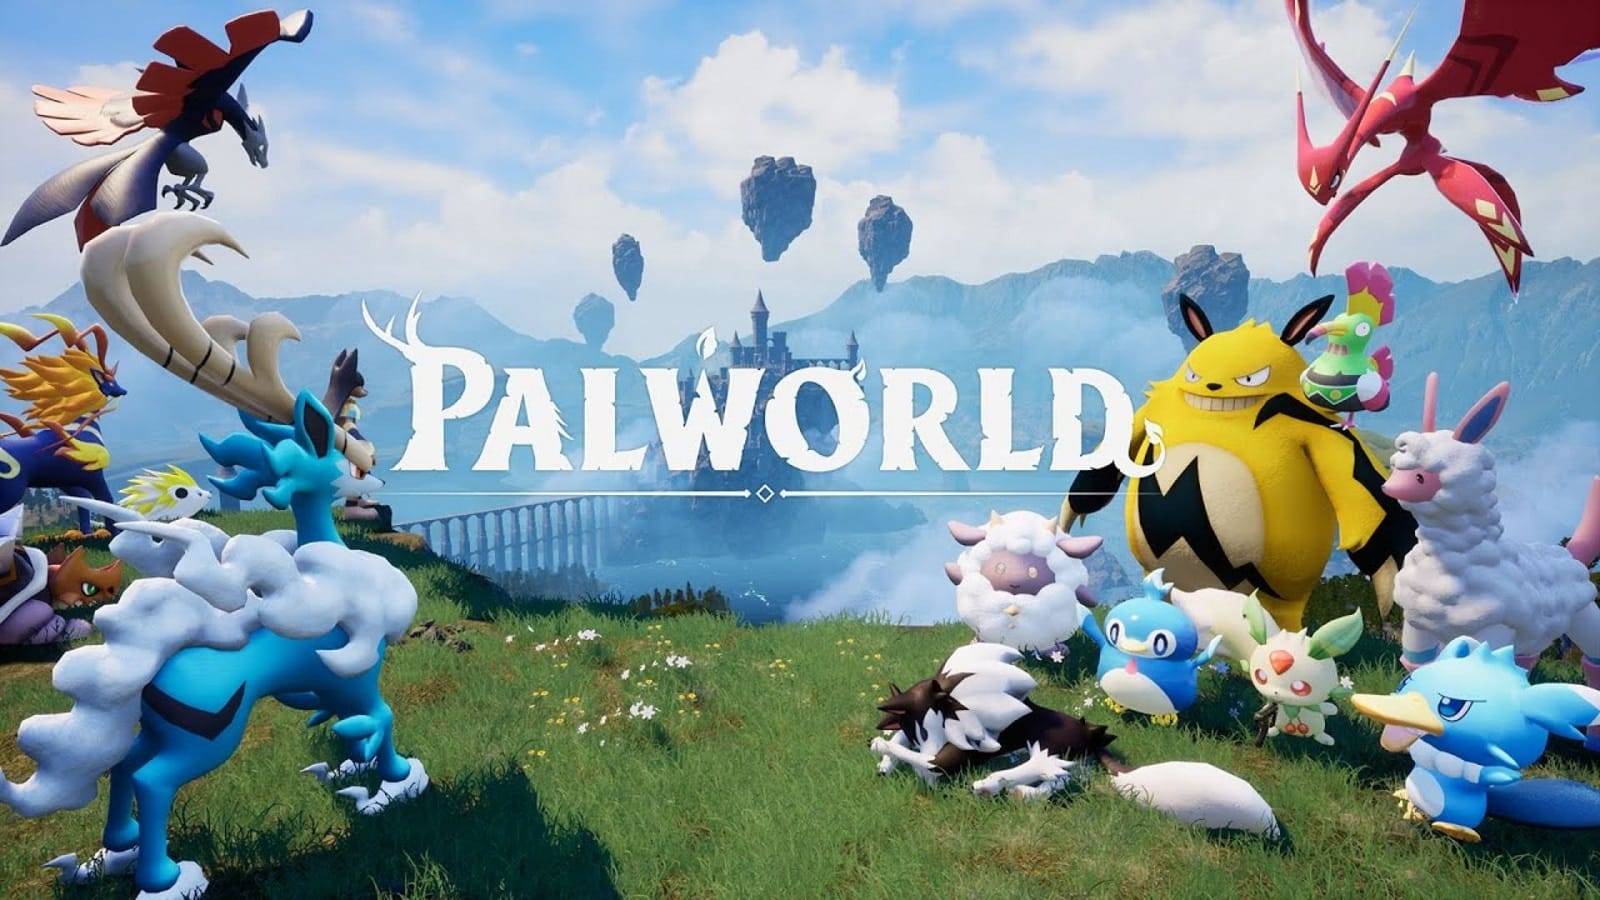 Palworld погнали покемонов ловить )))) вторая часть